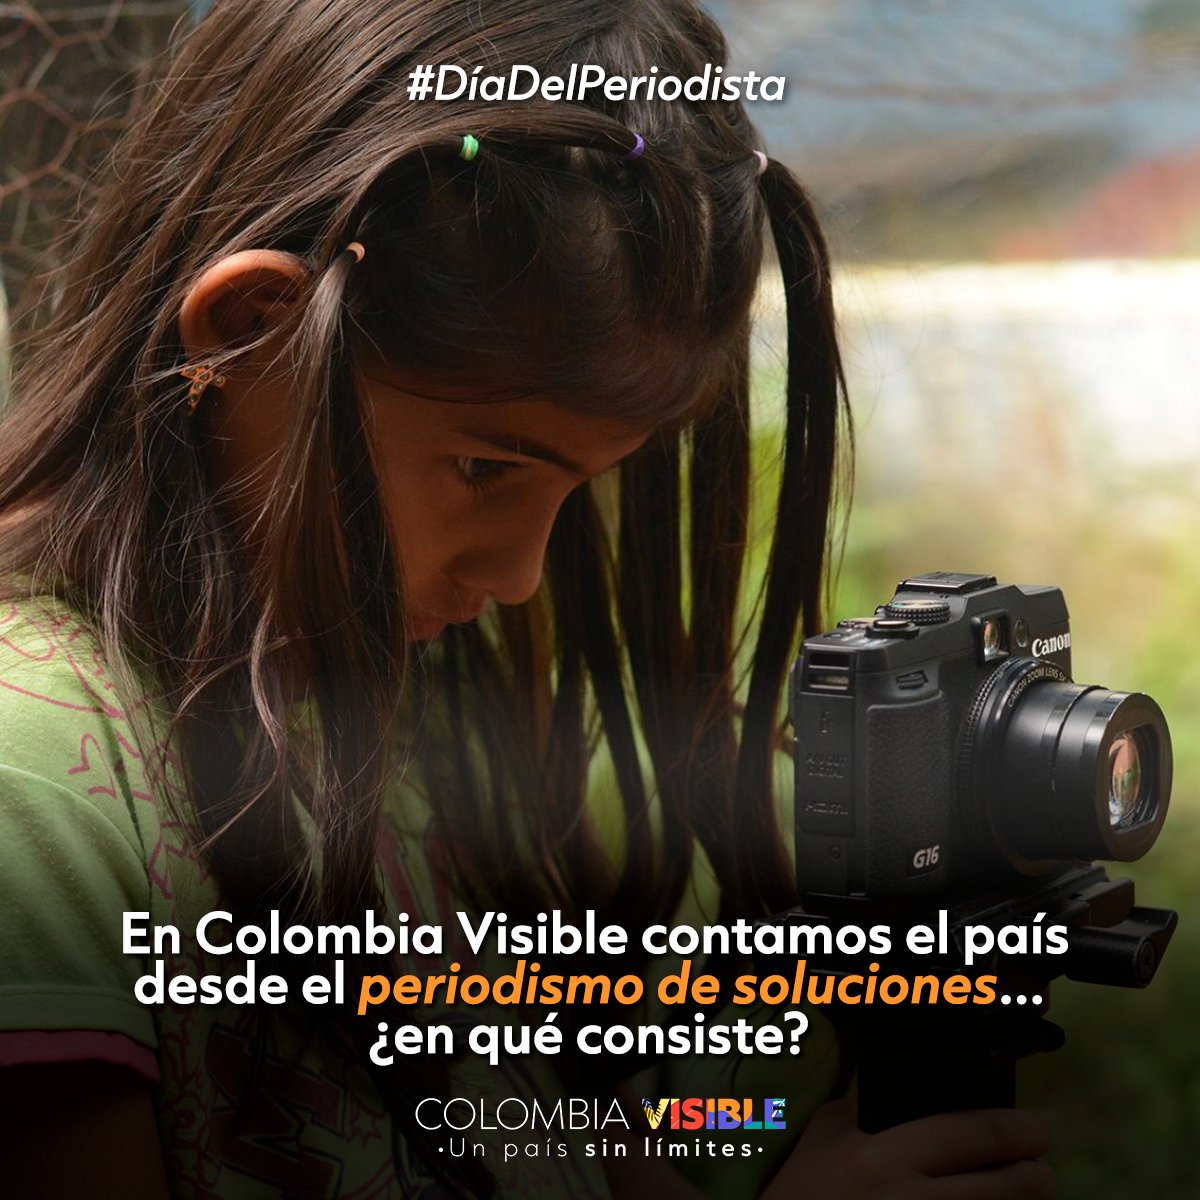 En este #DiaDelPeriodista queremos traerles un hilo breve sobre el #PeriodismoDeSoluciones, el enfoque con el que contamos las historias positivas del país.
Ojo a las imágenes. 

🧵(1/5)